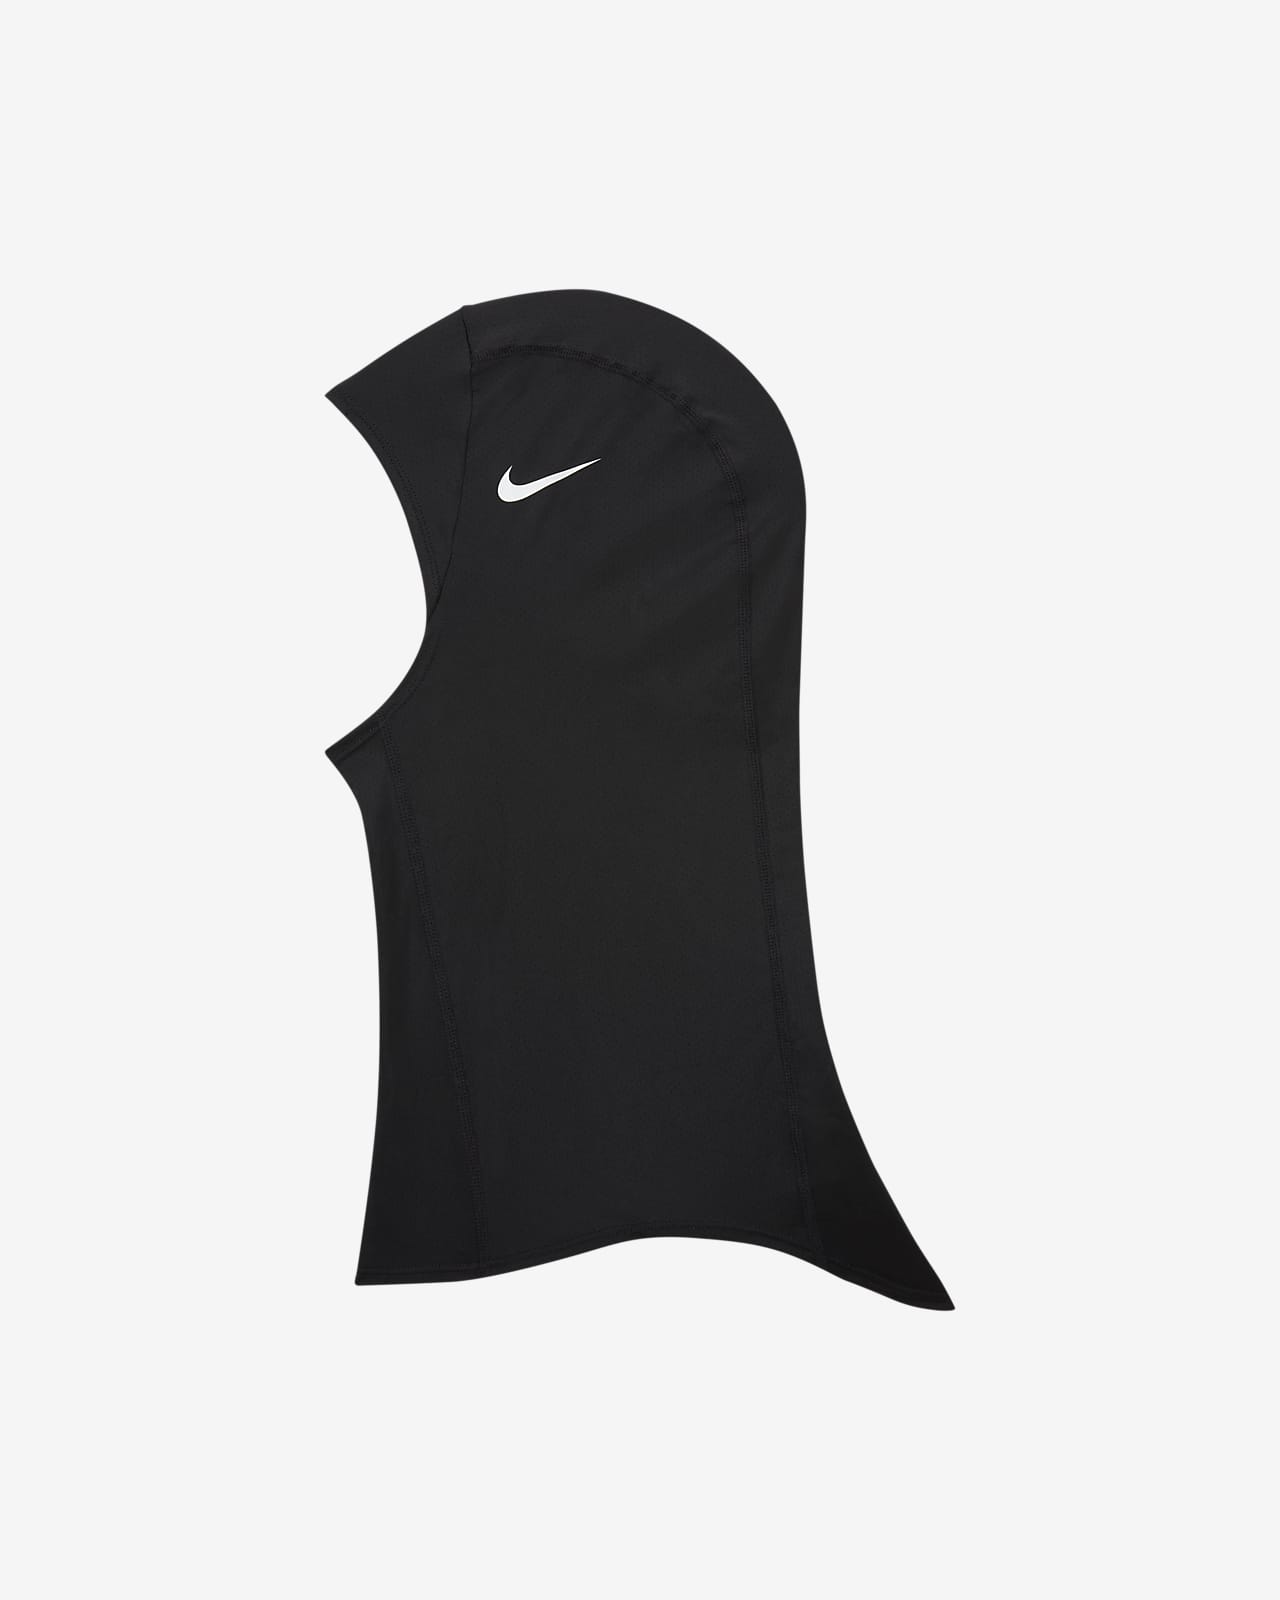 meesterwerk handelaar Een zekere Nike Pro Hijab. Nike.com